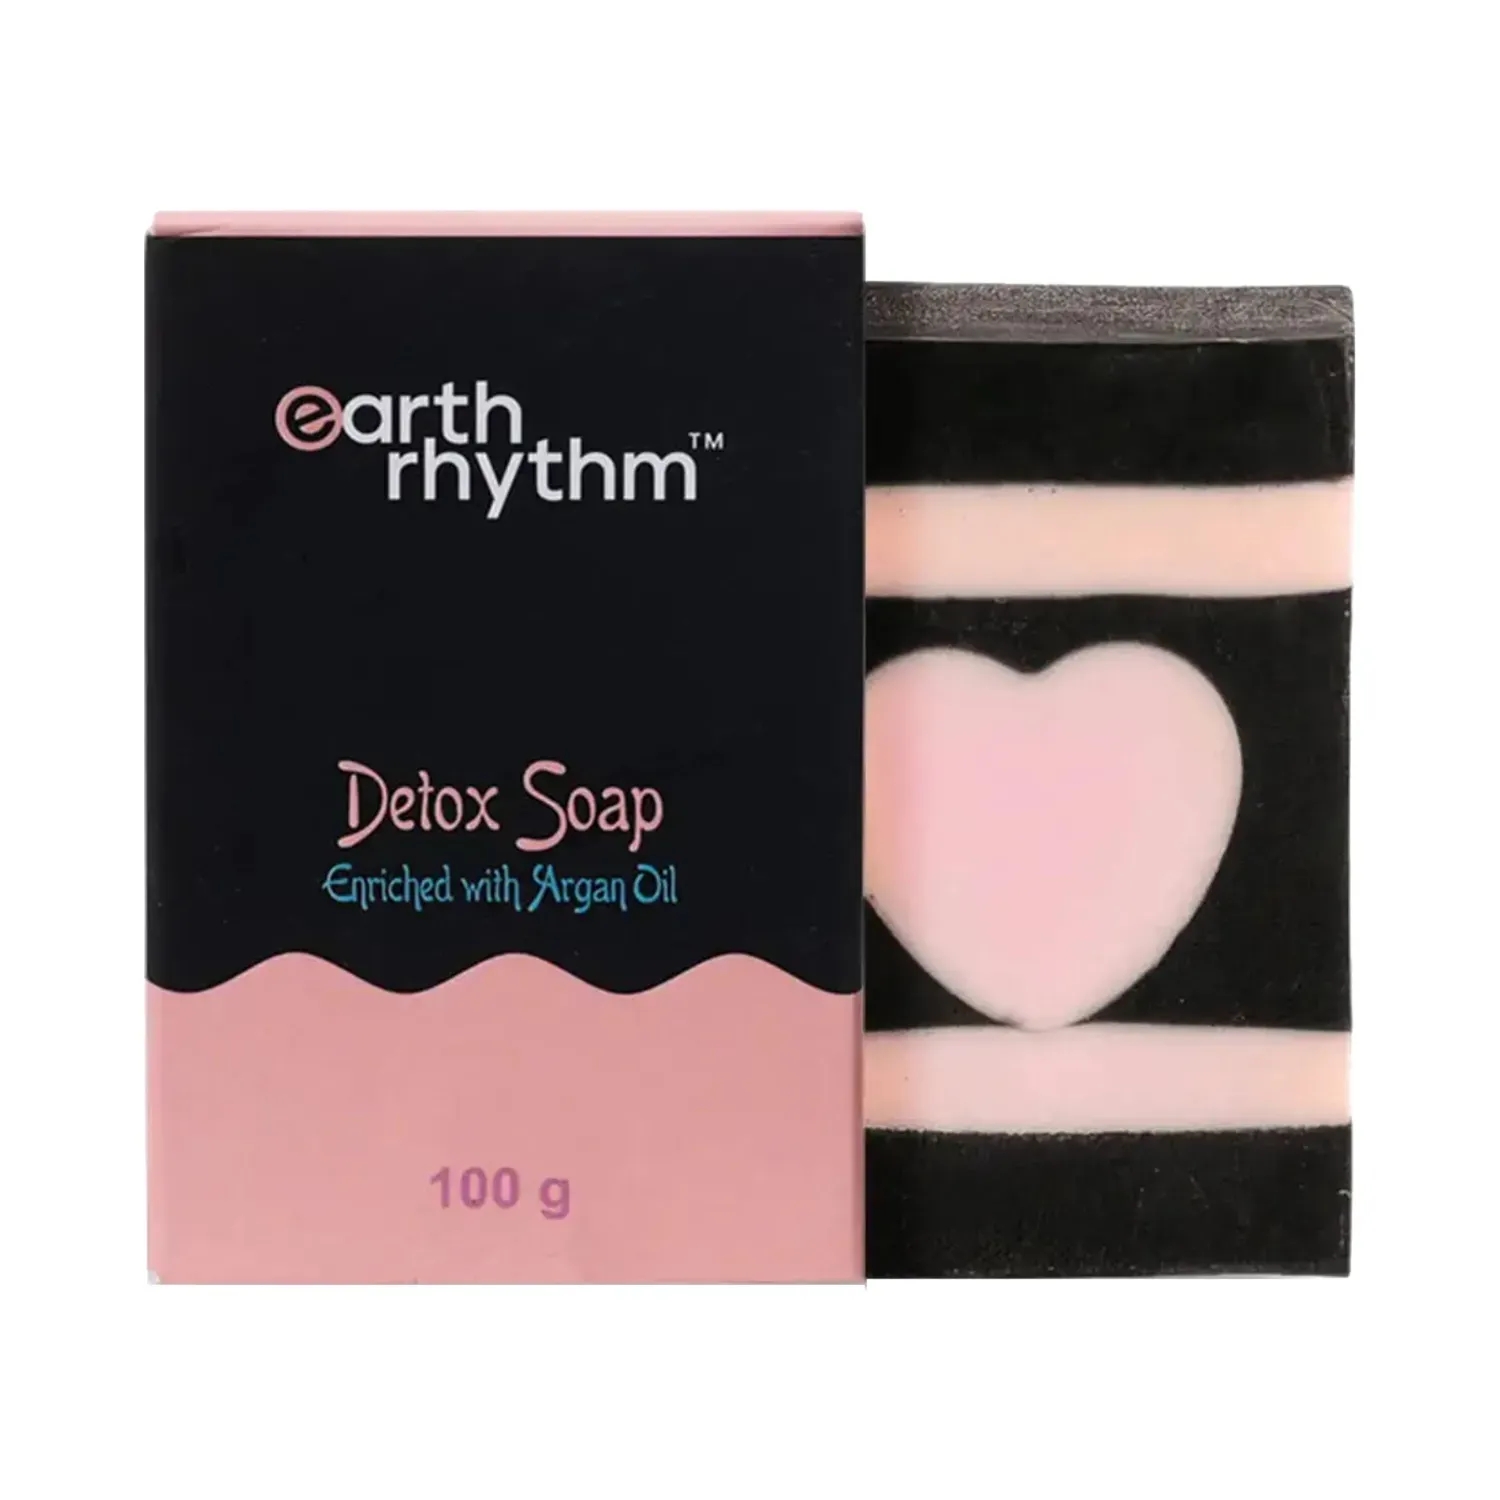 Earth Rhythm | Earth Rhythm Detox Soap With Argan Oil (100g)